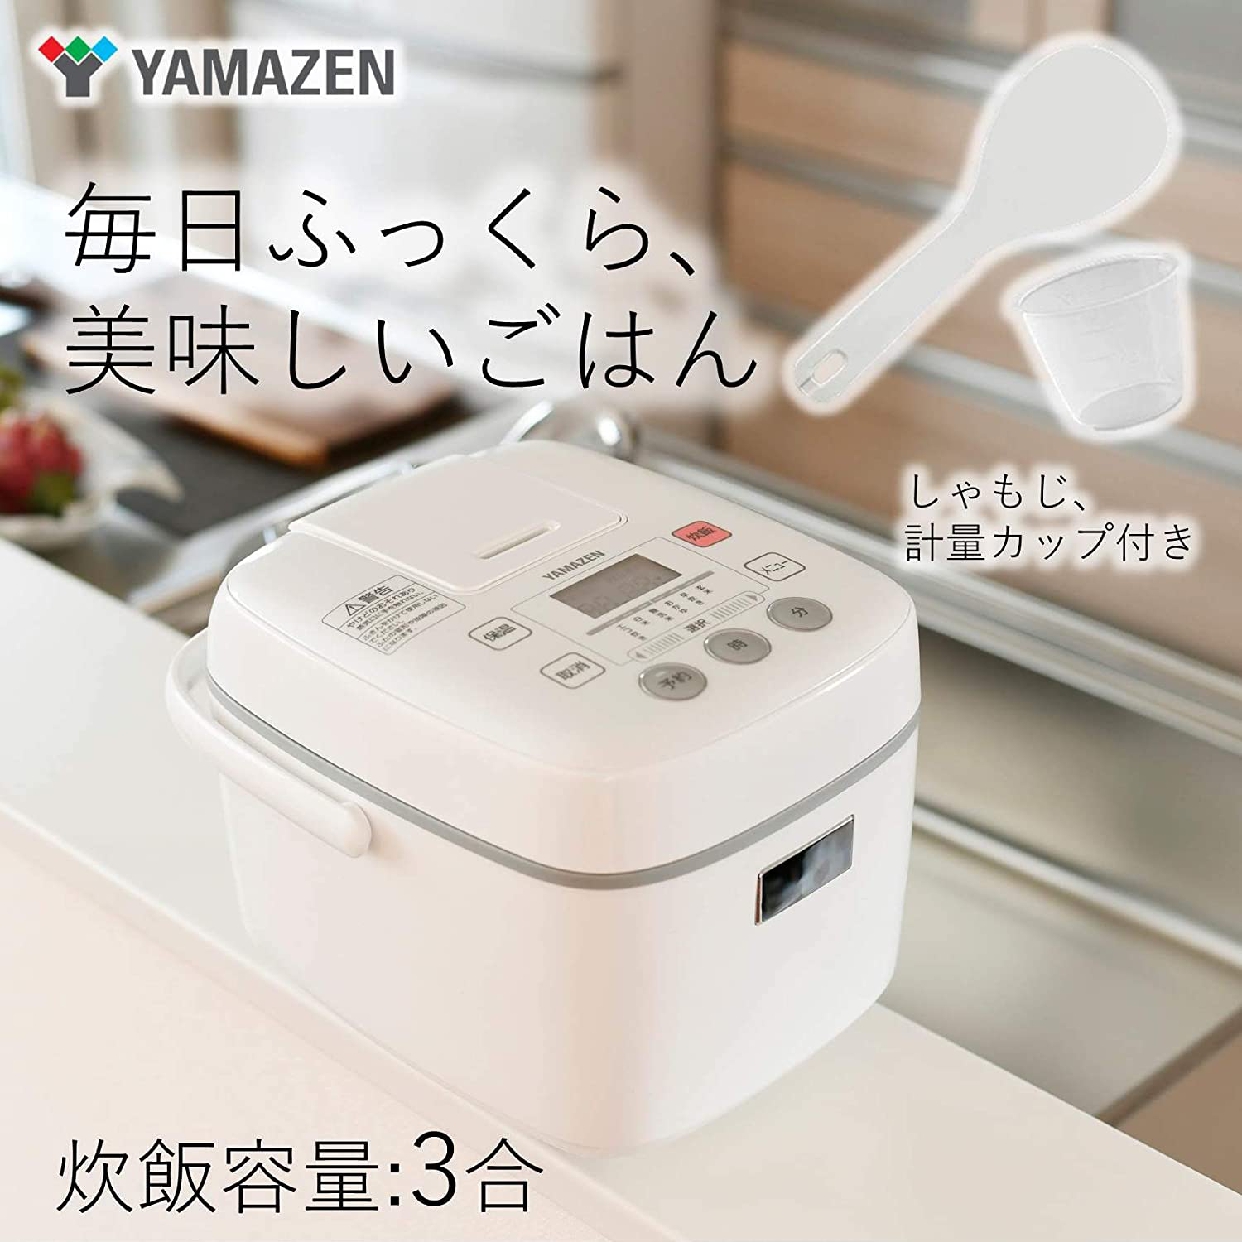 山善(YAMAZEN) マイコン炊飯ジャー YJC-300の商品画像2 